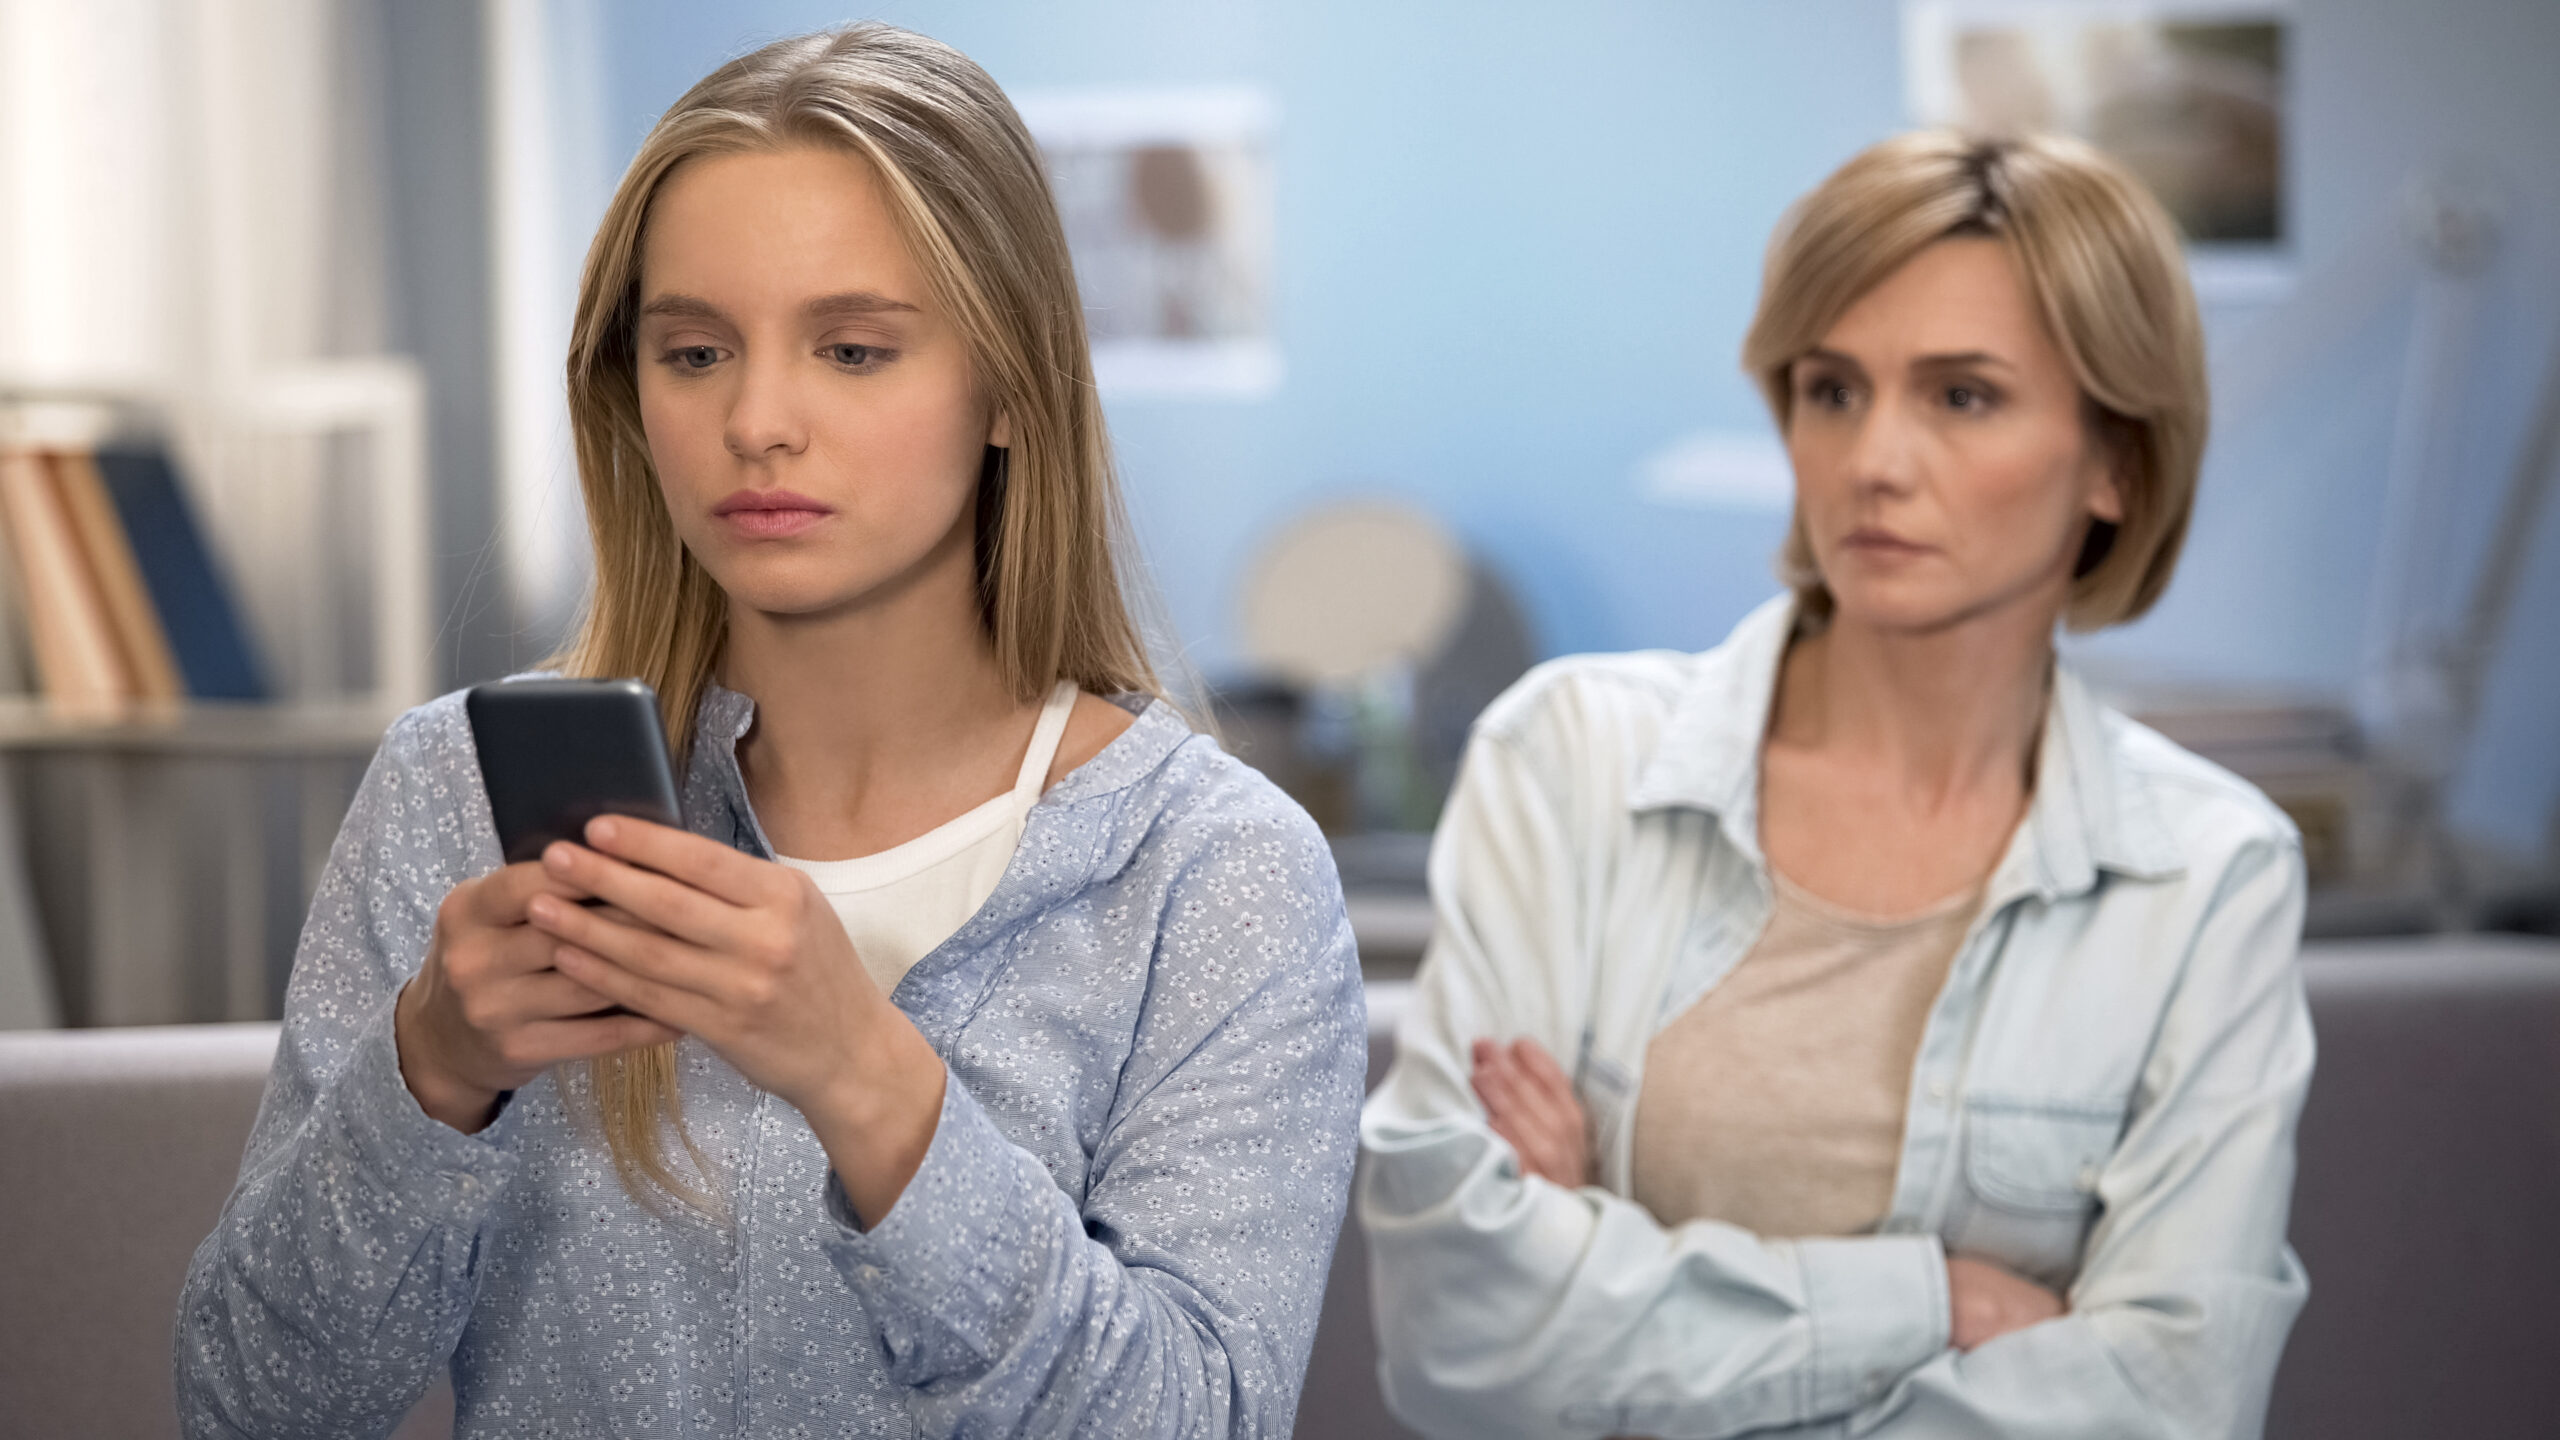 Daughter with smartphone in hands ignoring mom, misunderstanding